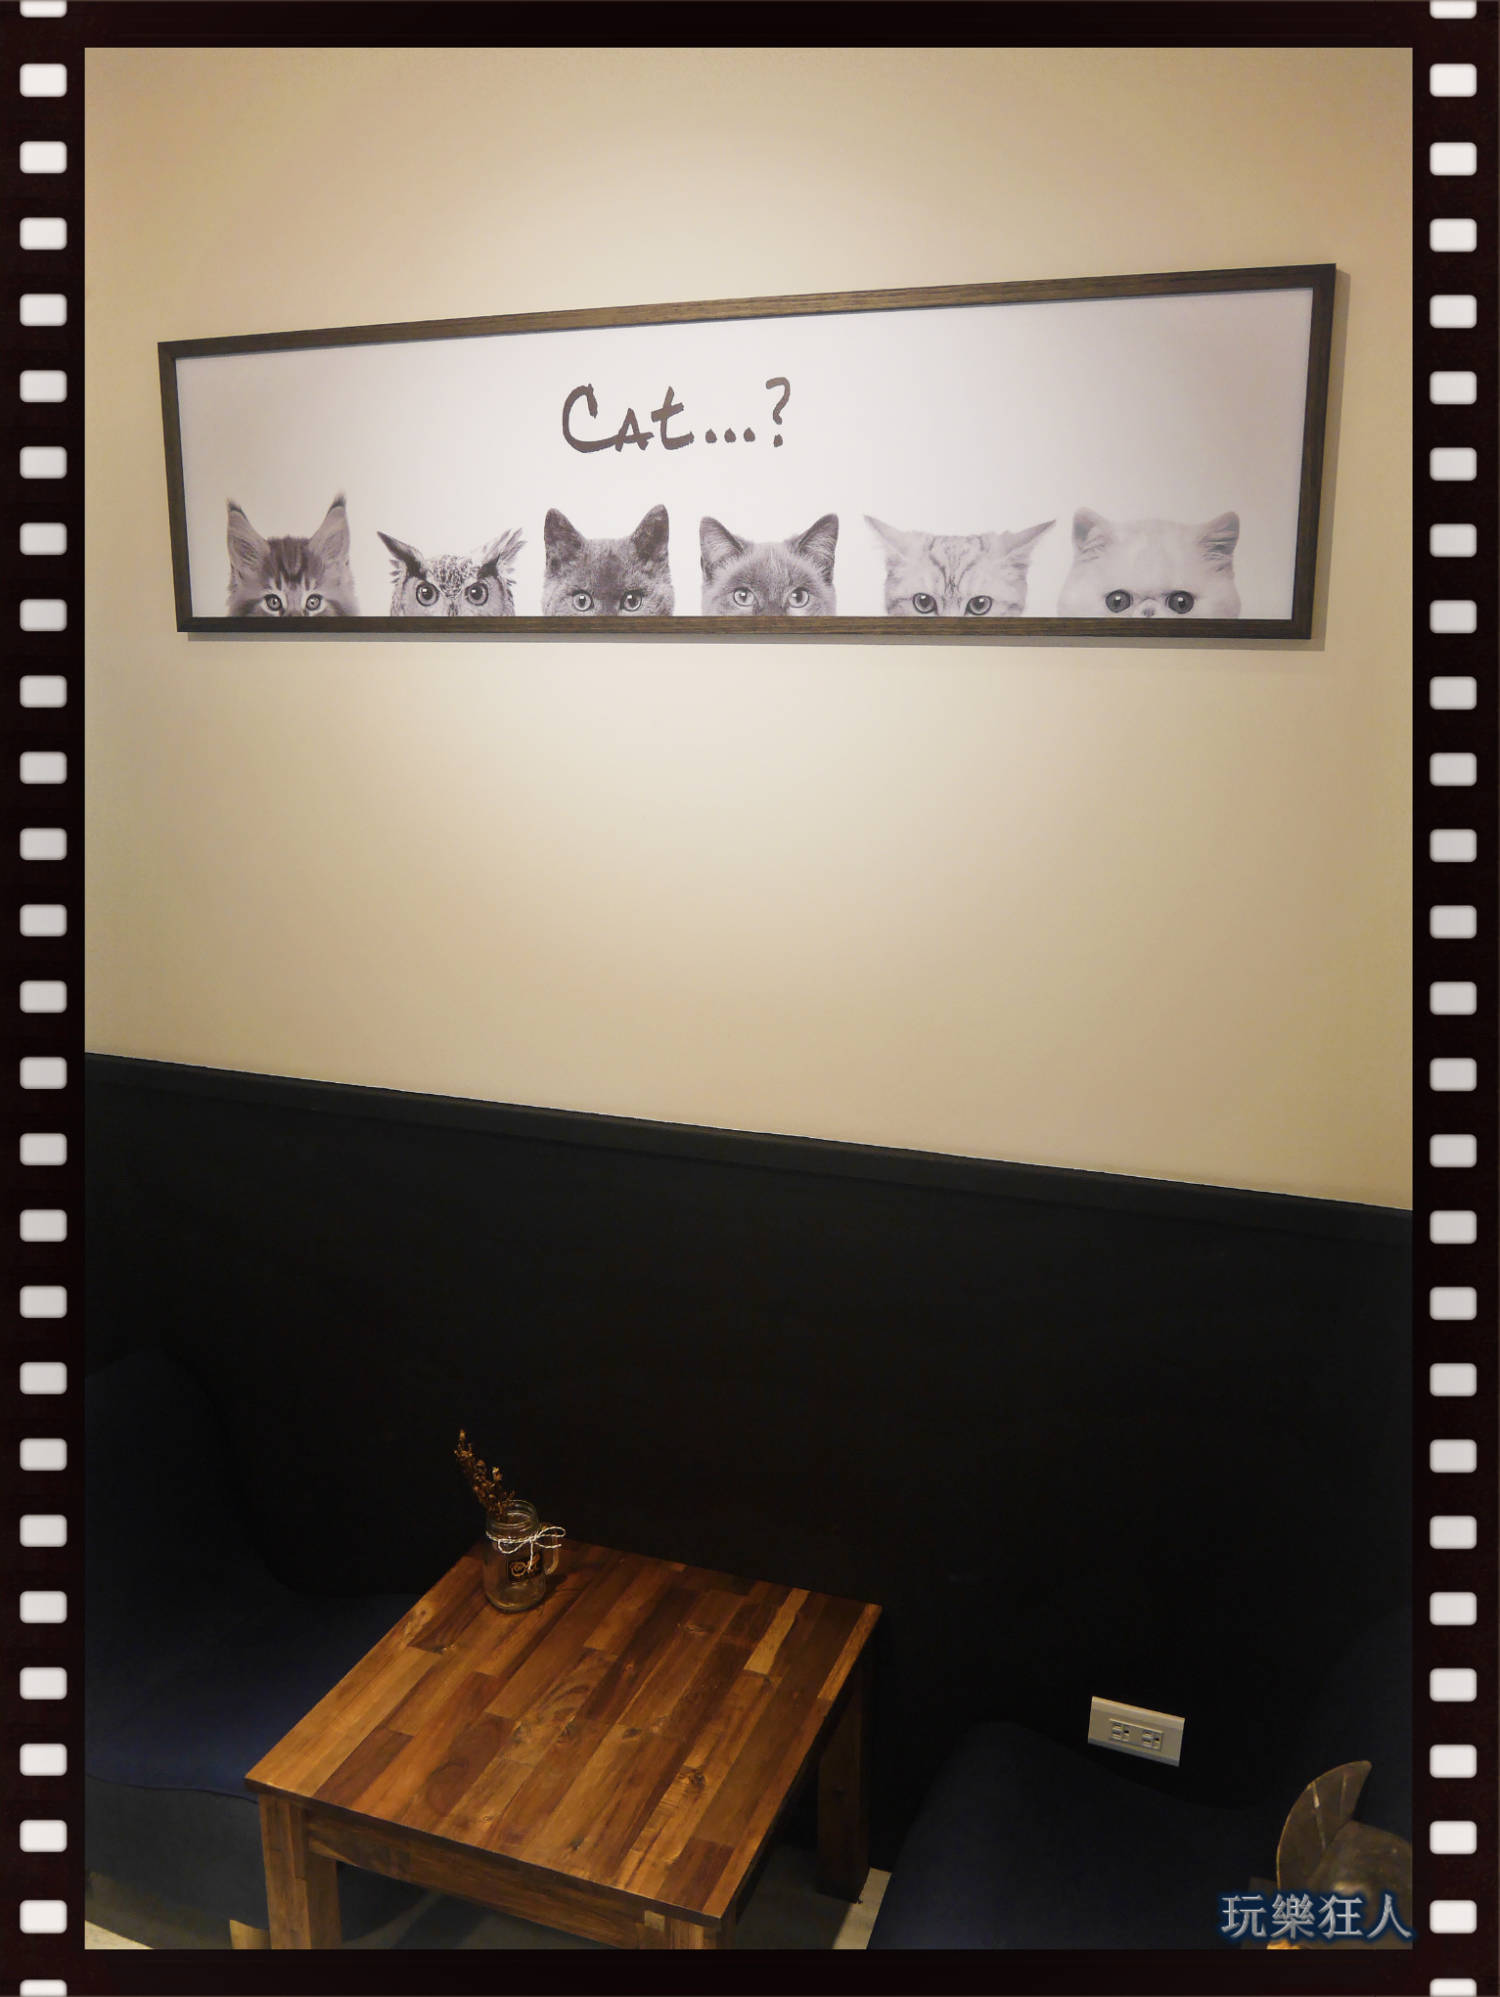 『貓頭鷹法式手工甜點 』咖啡廳- Cat...?